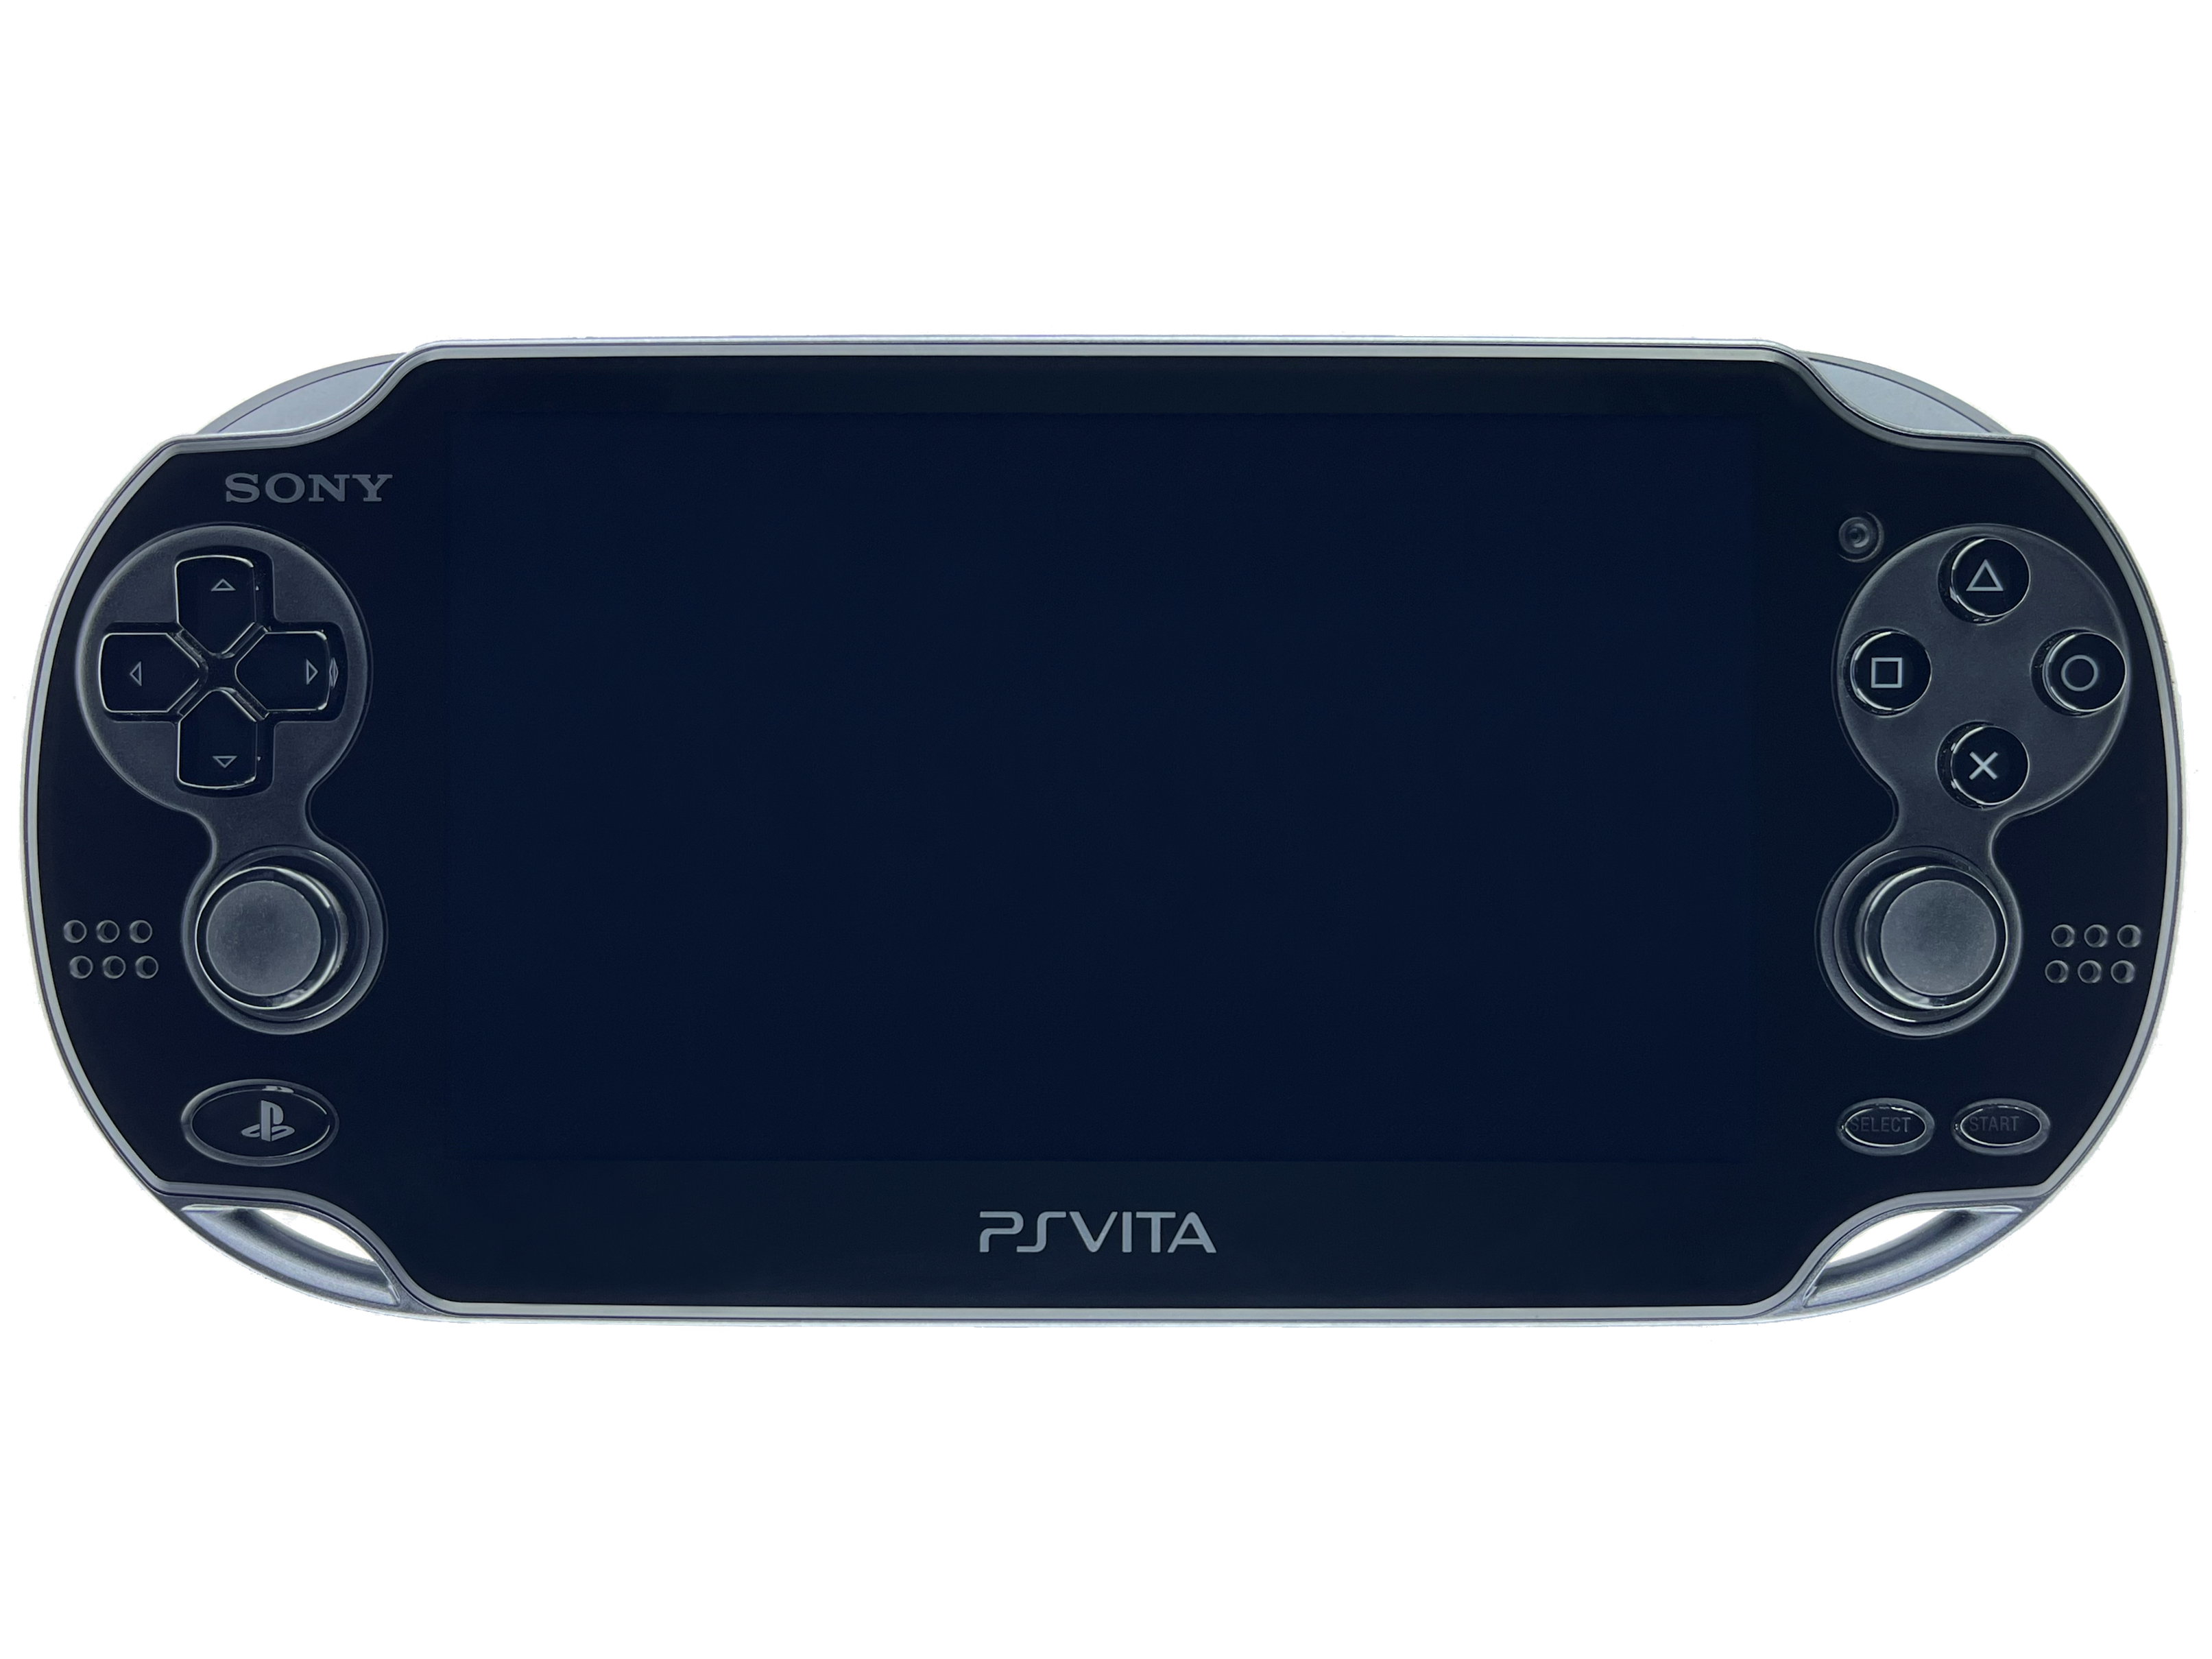  Sony PS Vita TEFV-1000PV1 Prototype Testing Kit